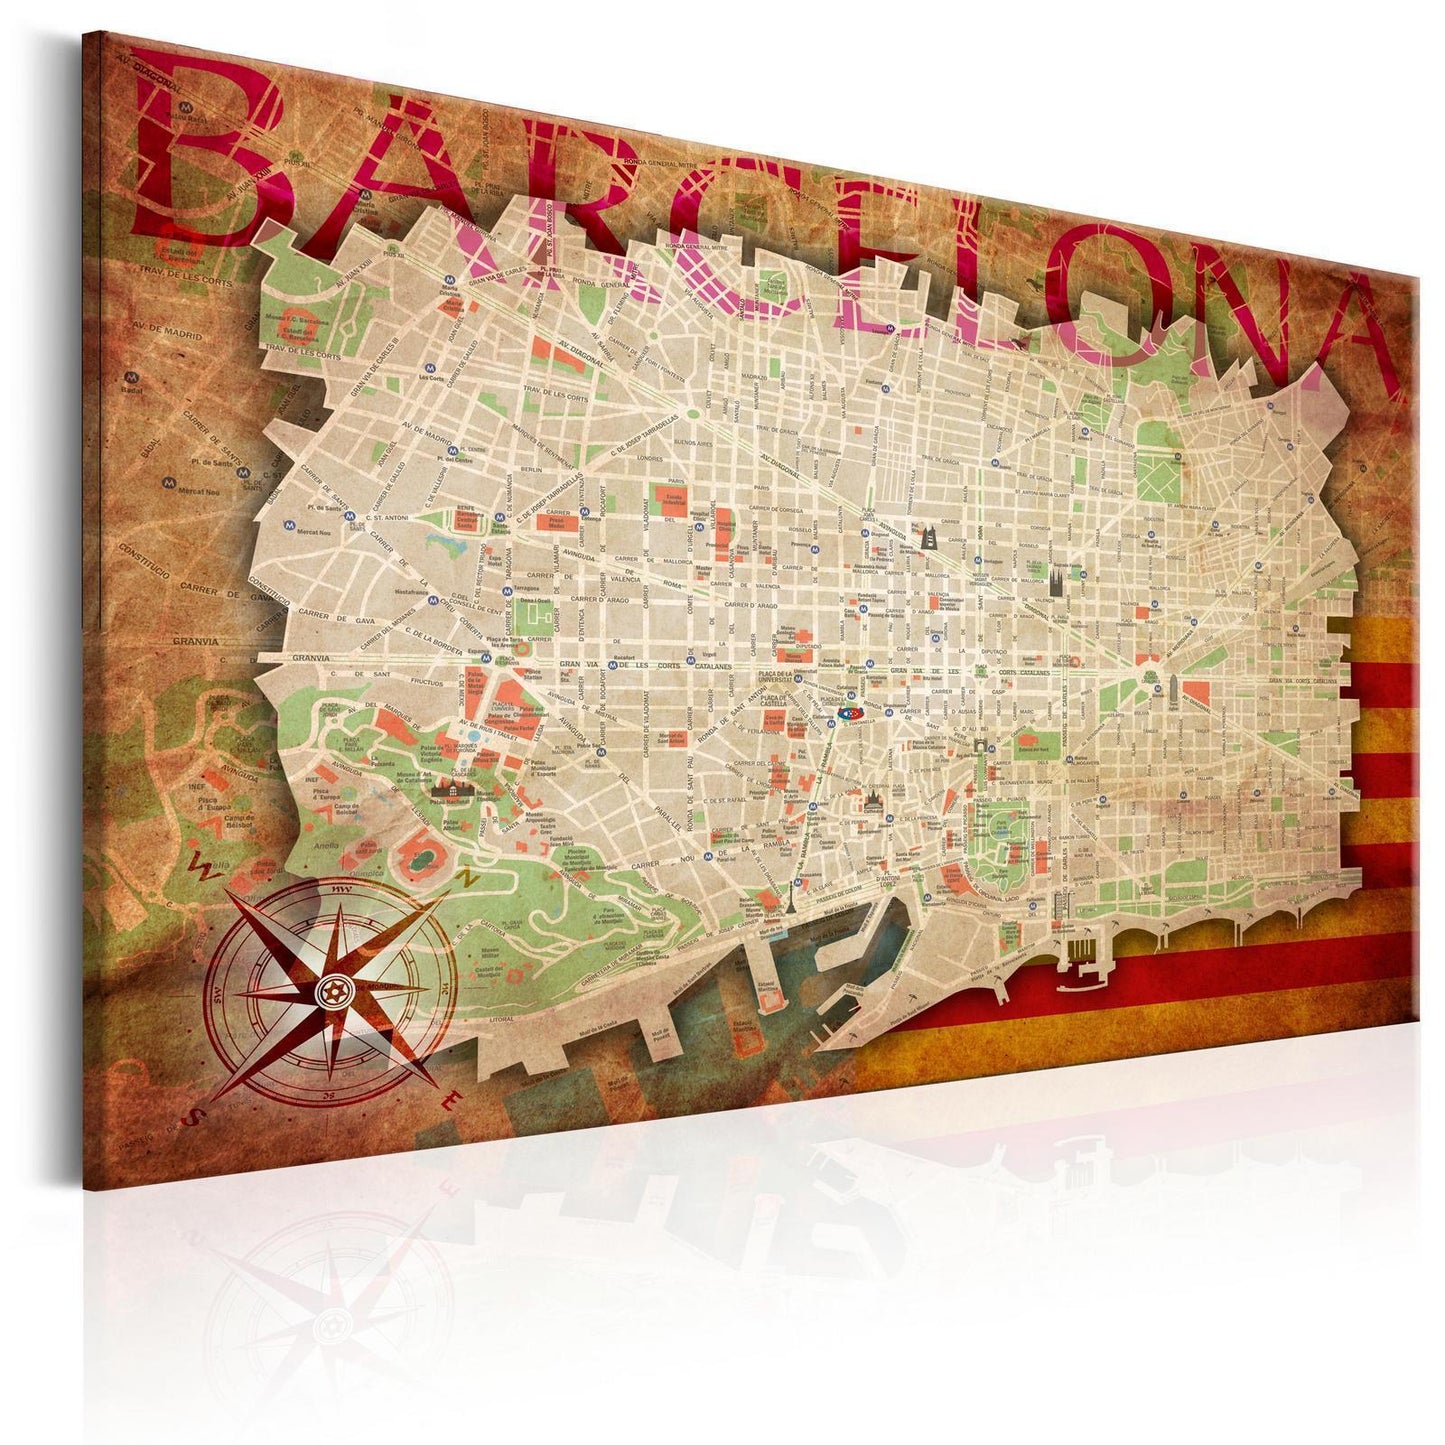 Afbeelding op kurk - Map of Barcelona